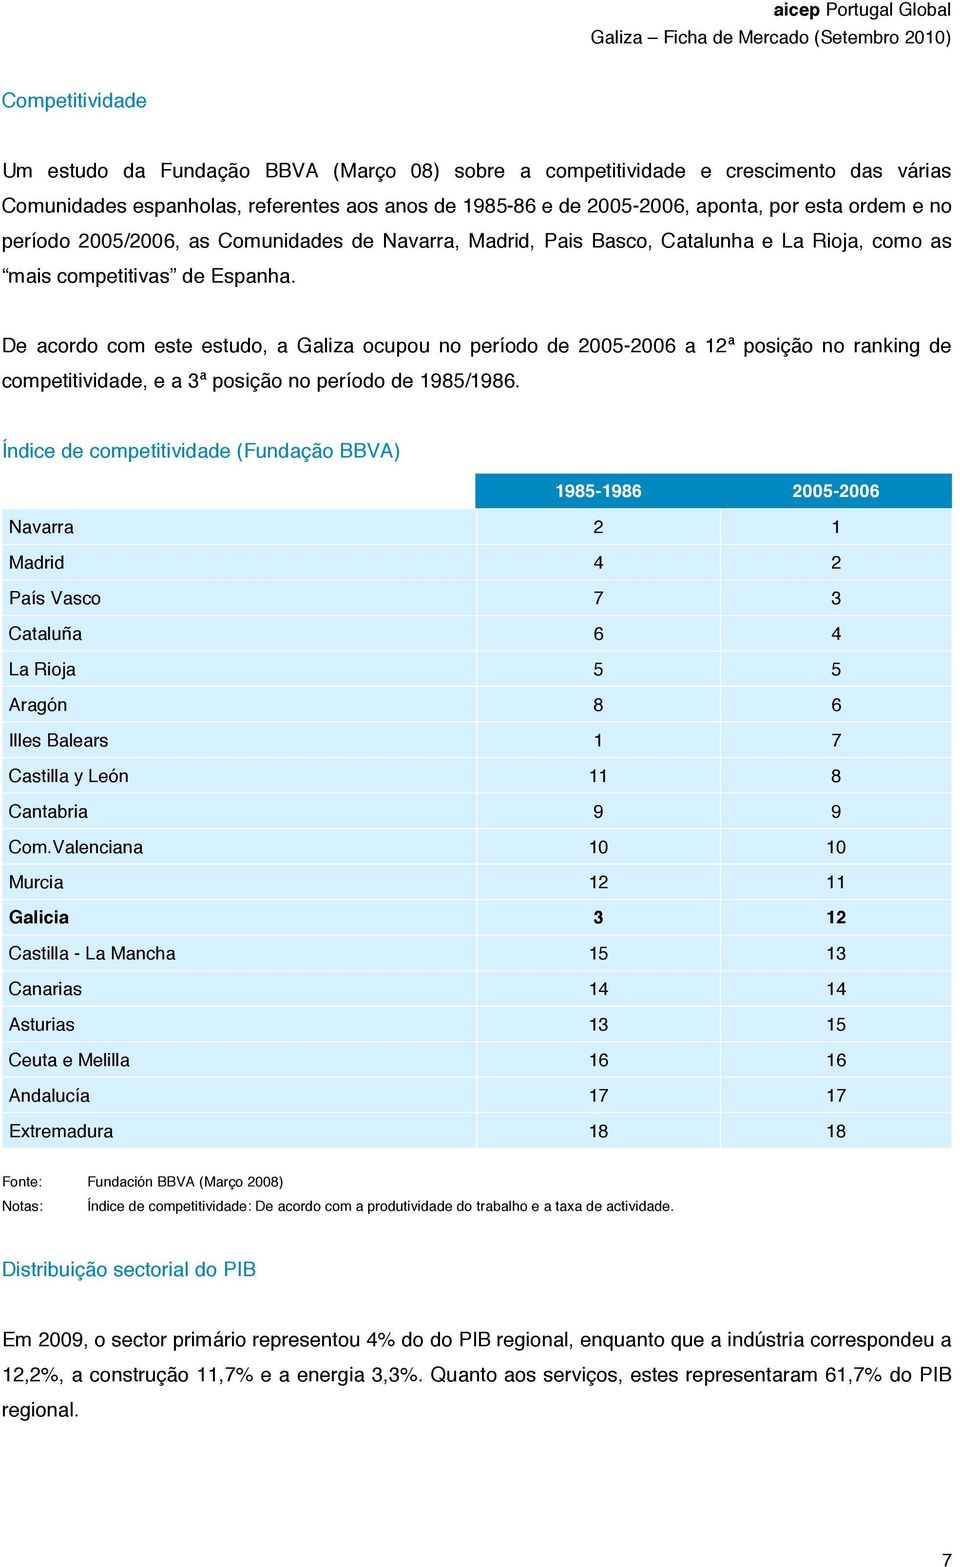 De acordo com este estudo, a Galiza ocupou no período de 2005-2006 a 12ª posição no ranking de competitividade, e a 3ª posição no período de 1985/1986.